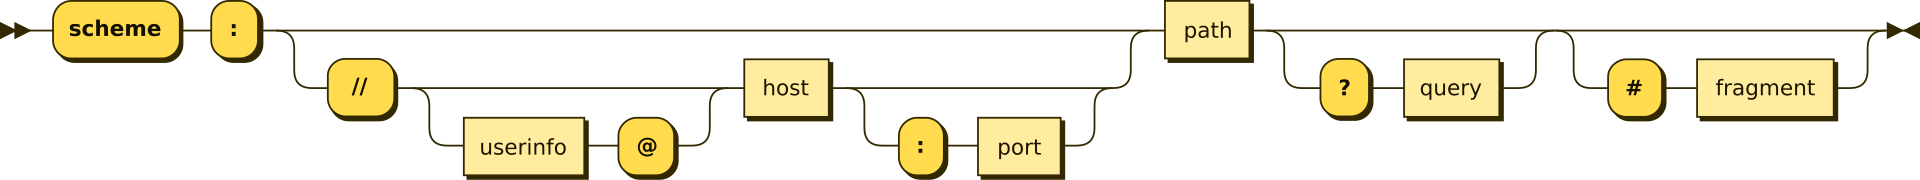 URI flow diagram